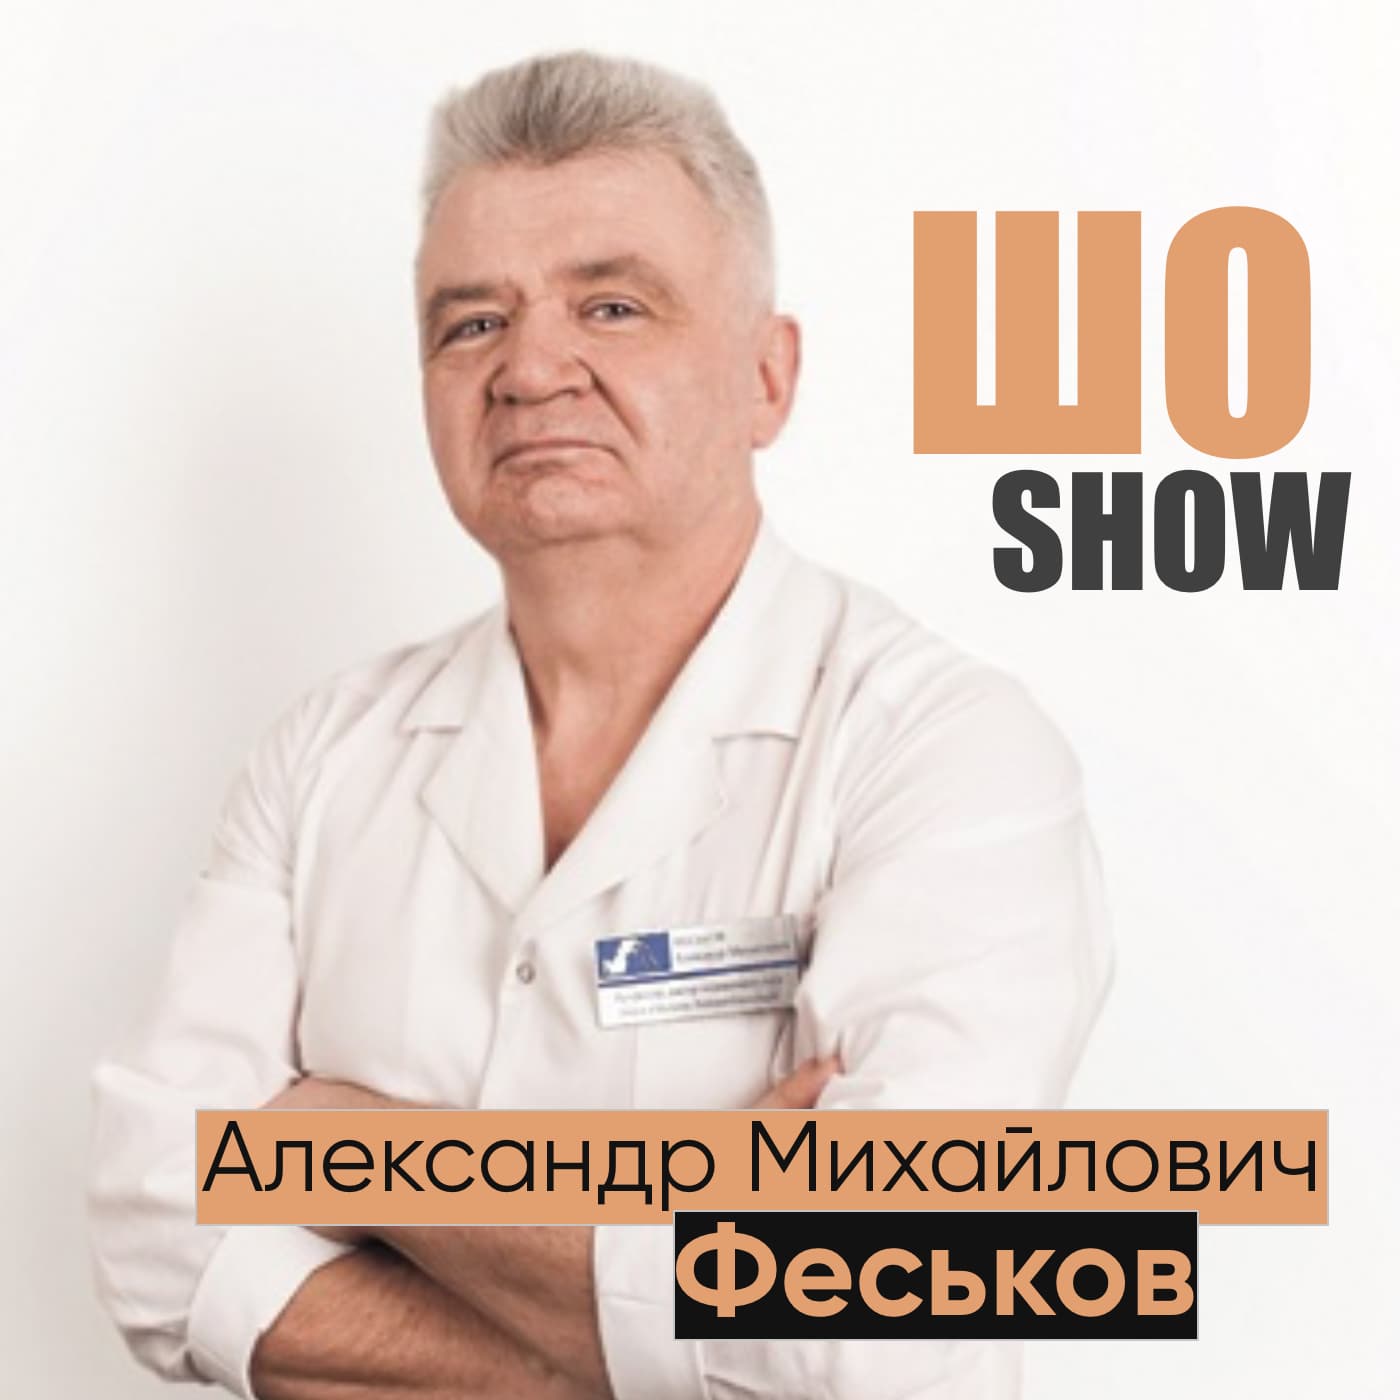 👨‍⚕ Доктор Феськов Александр Михайлович о возможностях криомедицины💉 @ ШО-ШОУ 📻